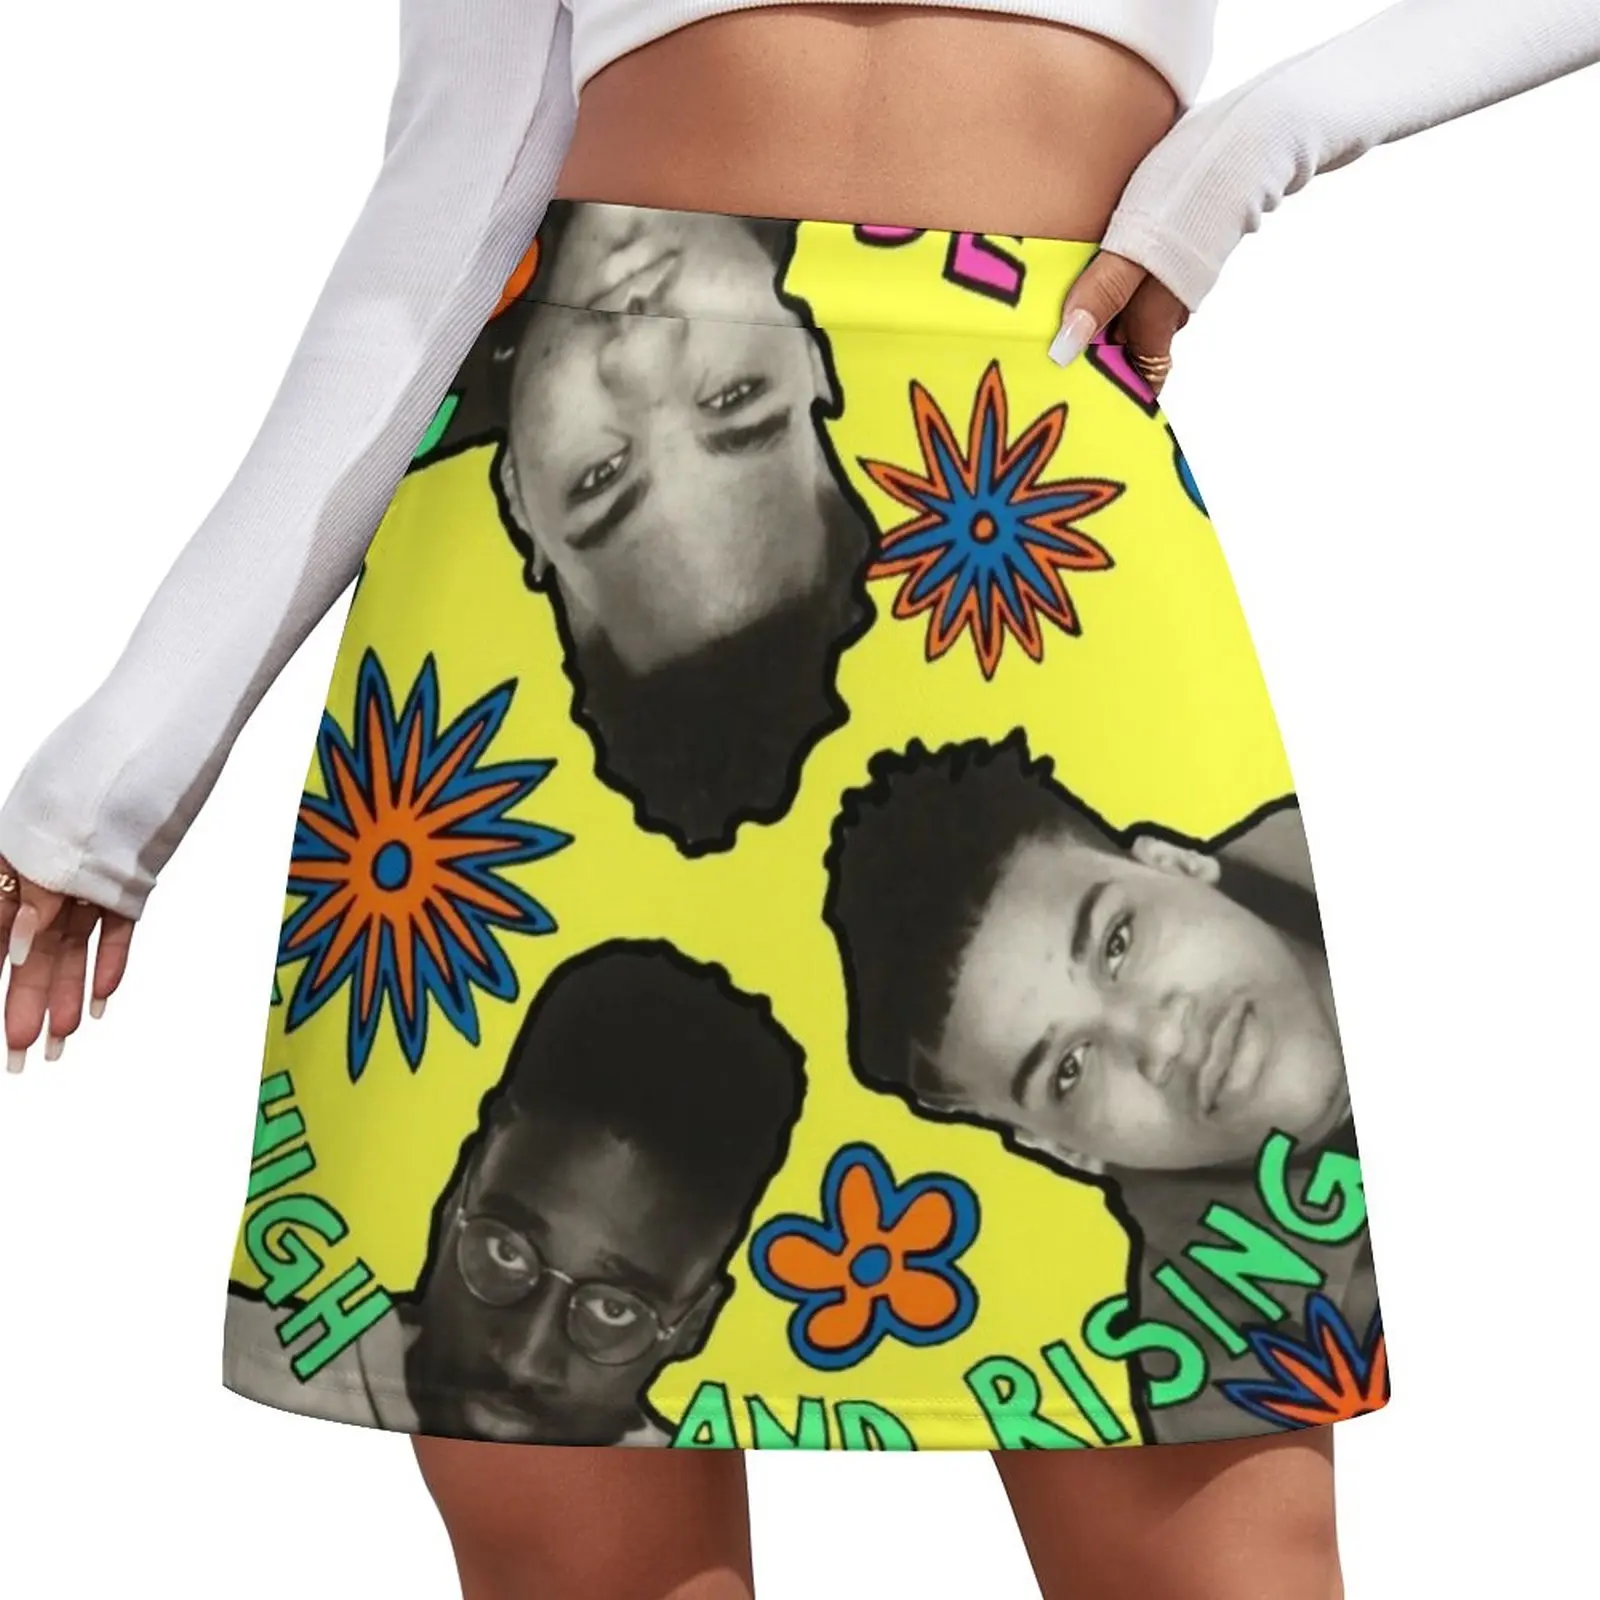 

De La Soul Mini Skirt skirts for woman Skirt pants short skirt cosplay